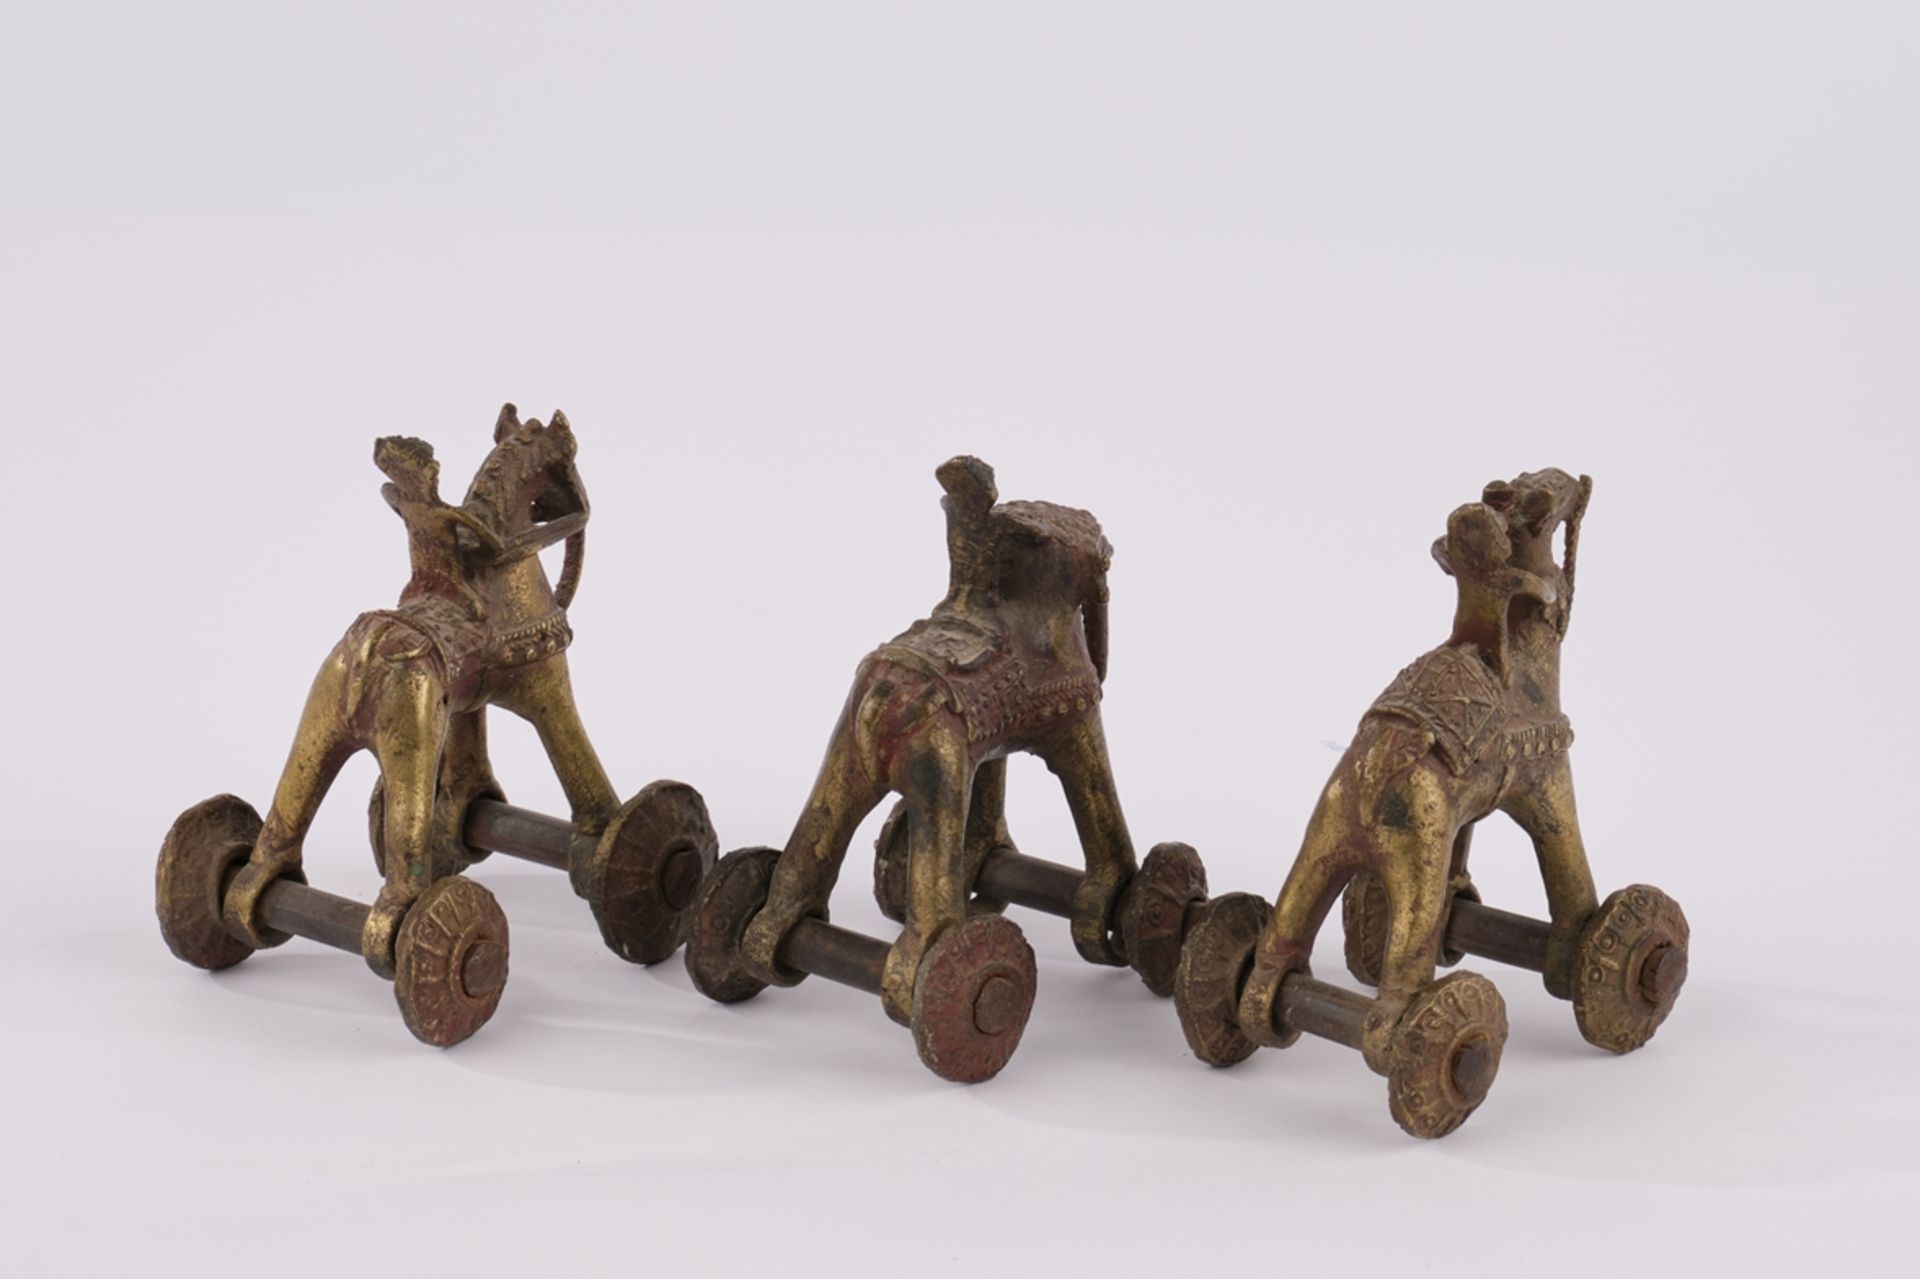 3 Spielzeugfiguren, "Elefant", "Kamel", "Pferd", Indien, spätes 20. Jh., Bronze, je mit Reiter und  - Bild 2 aus 2